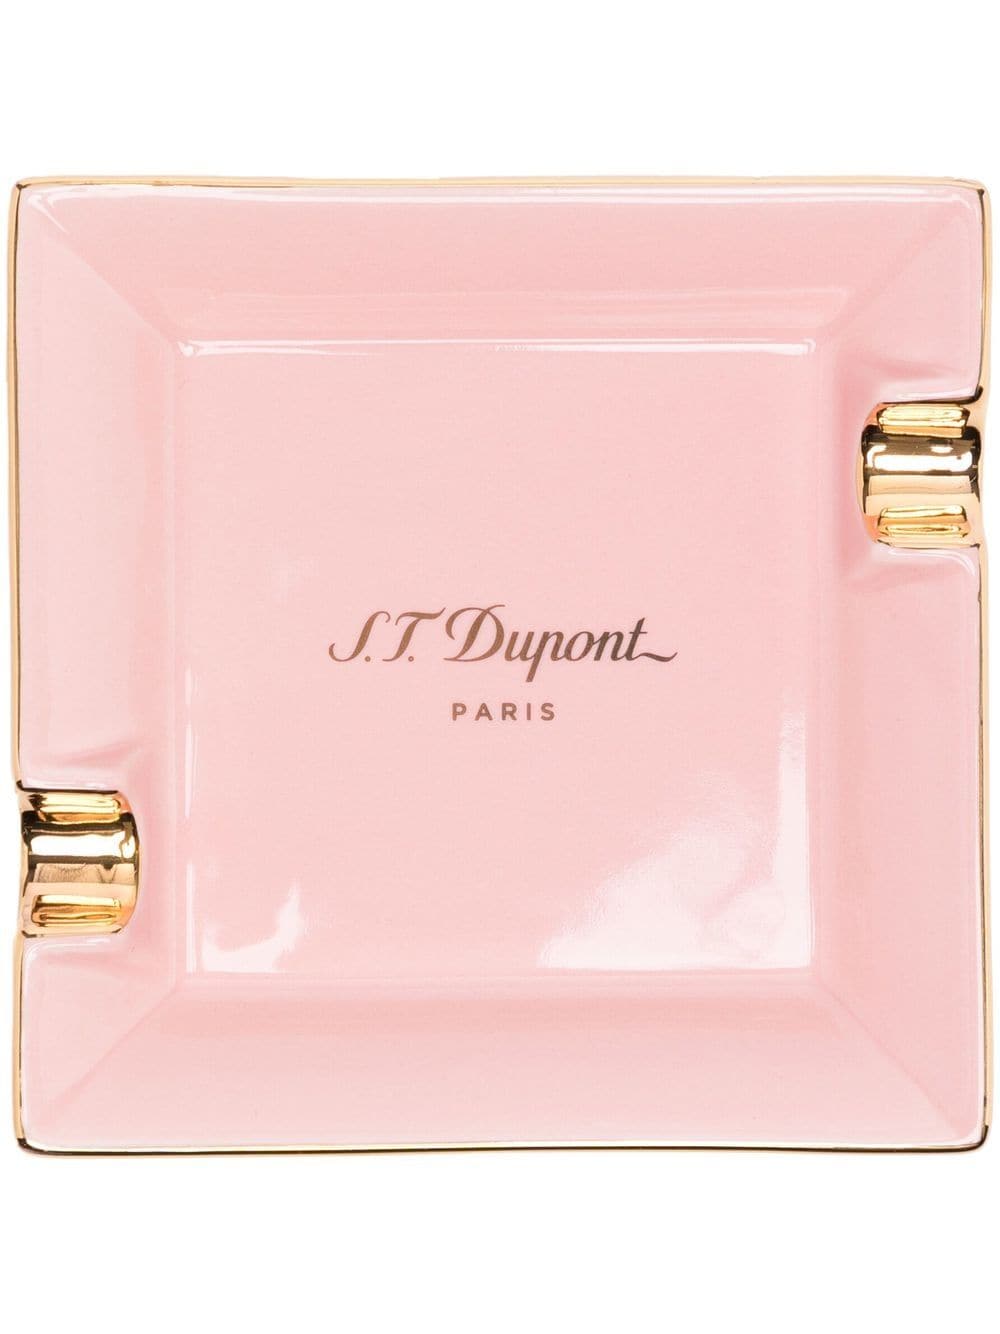 S.T. Dupont mini square cigarette ashtray - Pink von S.T. Dupont